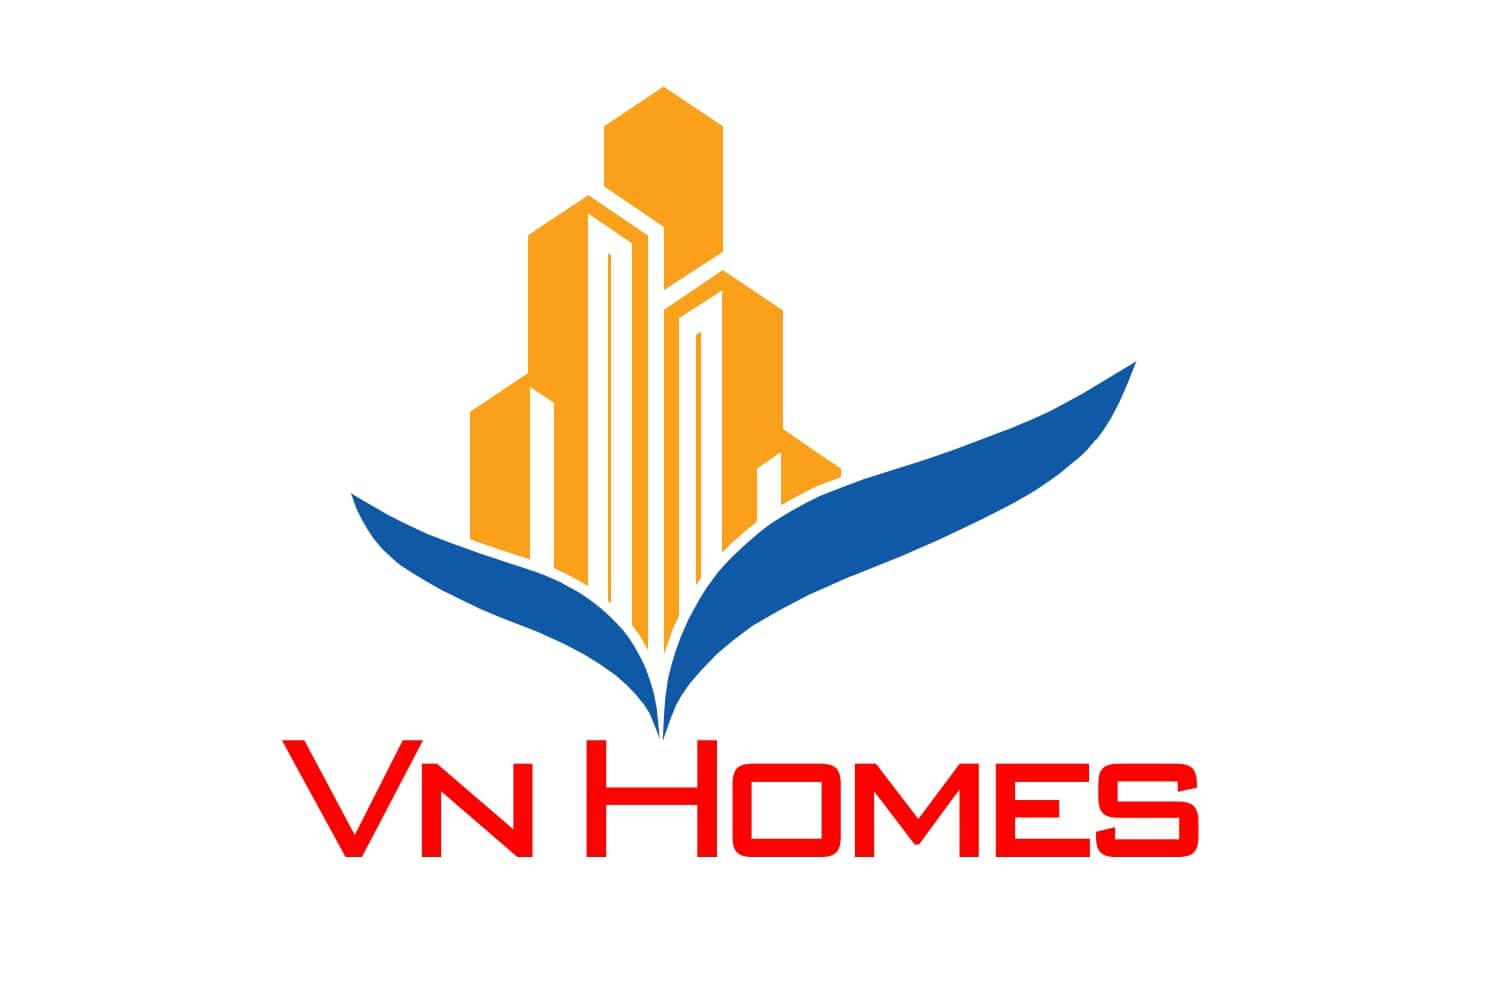 Thiết kế logo tại Hà Nội